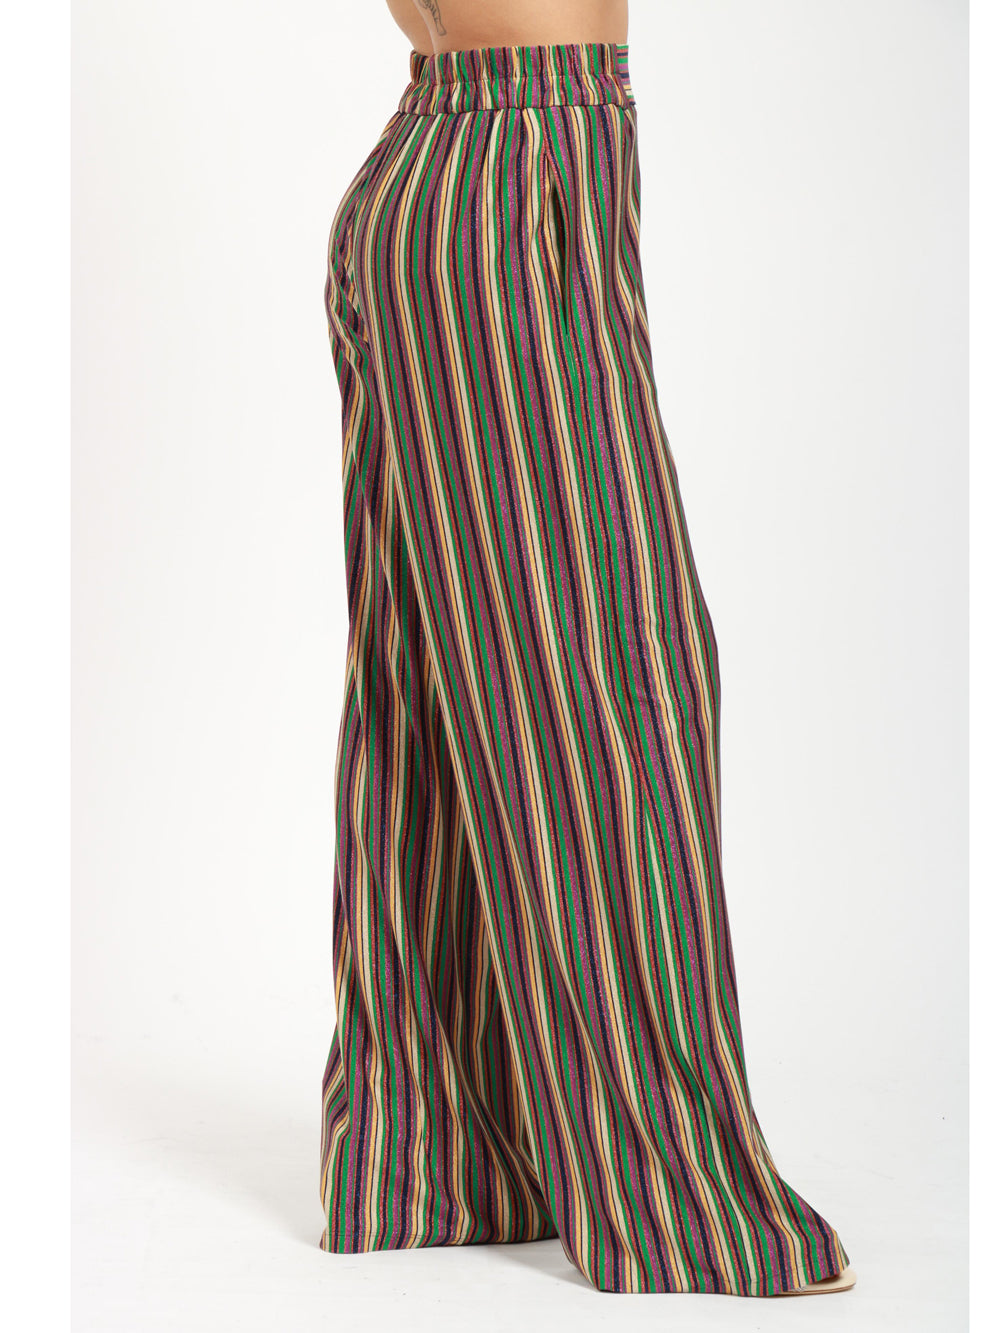 MOMONÌ Pantaloni Baccarat a Righe Multicolor con Lurex Multicolor